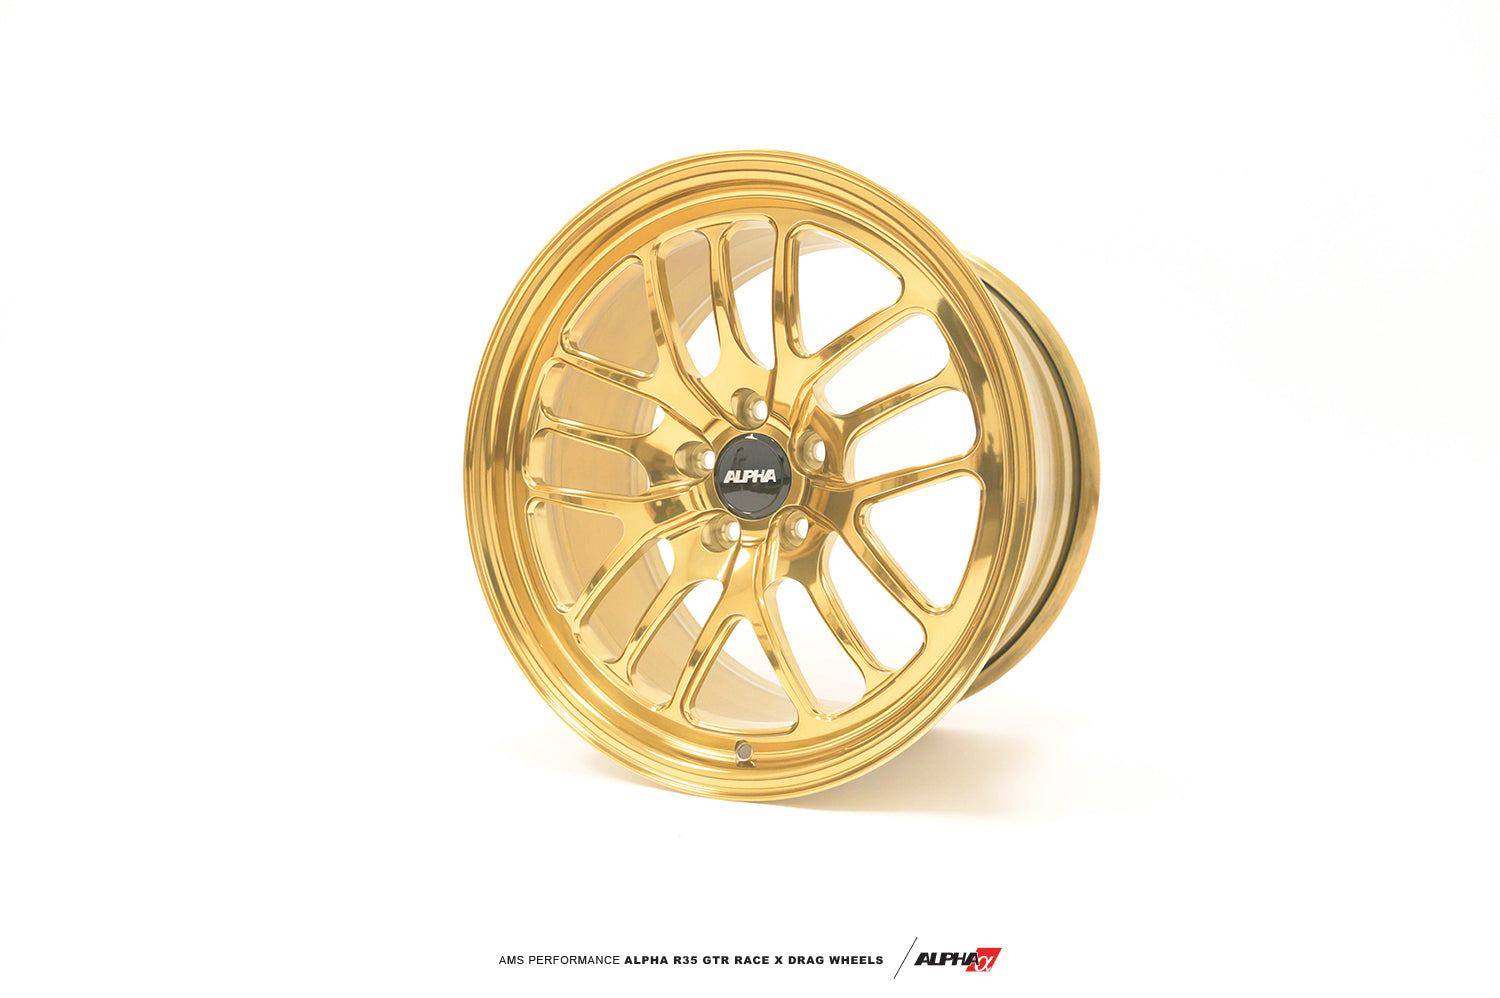 AMS AMS018116563 ALPHA Performance Race X 18X11 "2-Piece Rear Drag Wheel (Each) Photo-1 